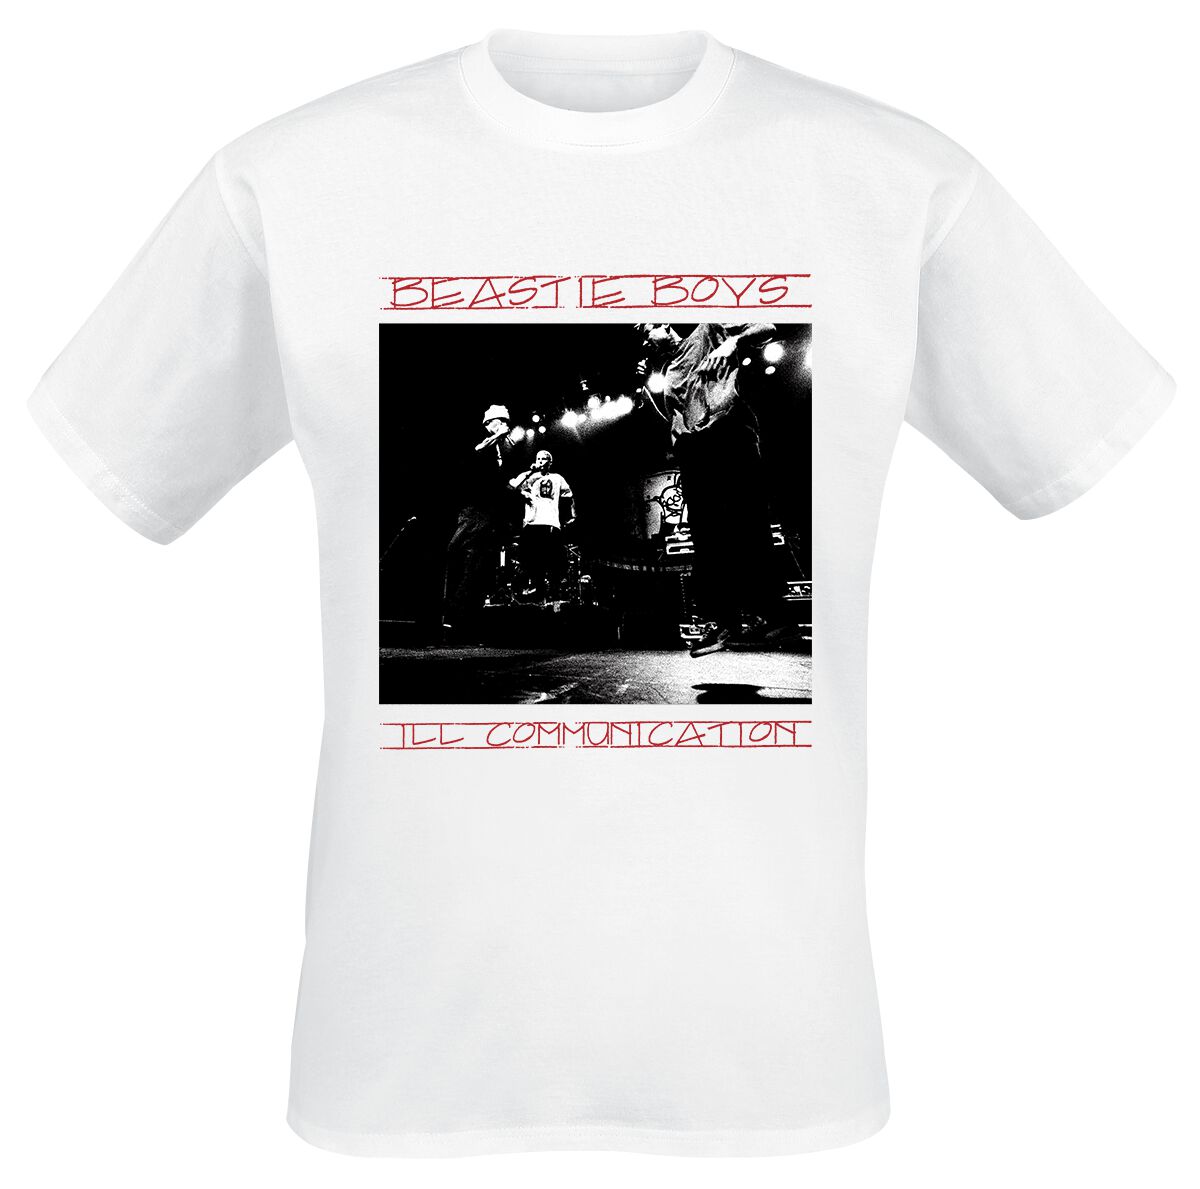 Beastie Boys T-Shirt - III Communication Tracklist - S bis XL - für Männer - Größe S - weiß  - Lizenziertes Merchandise!